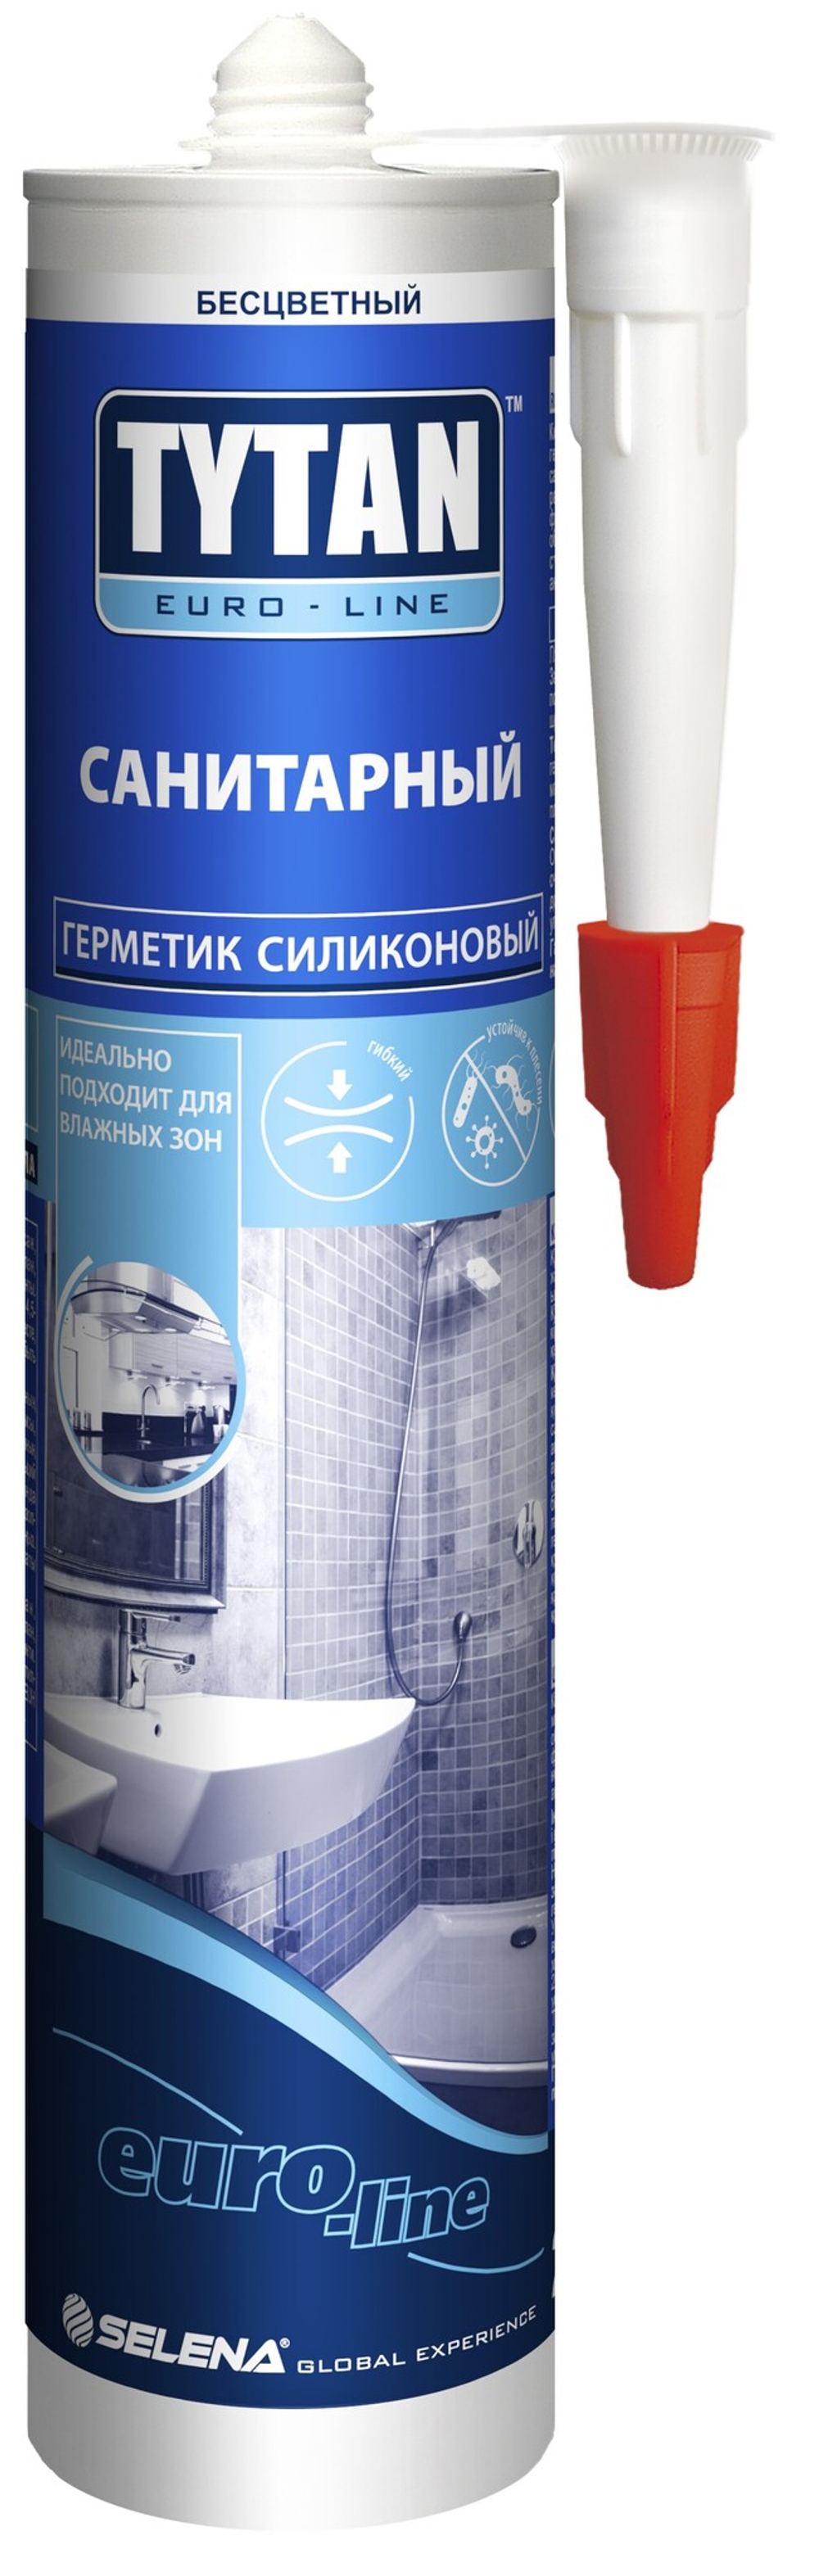 Герметик Силиконовый Санитарный Tytan Euro-Line бесцветный (290мл/280мл/330г/230г)